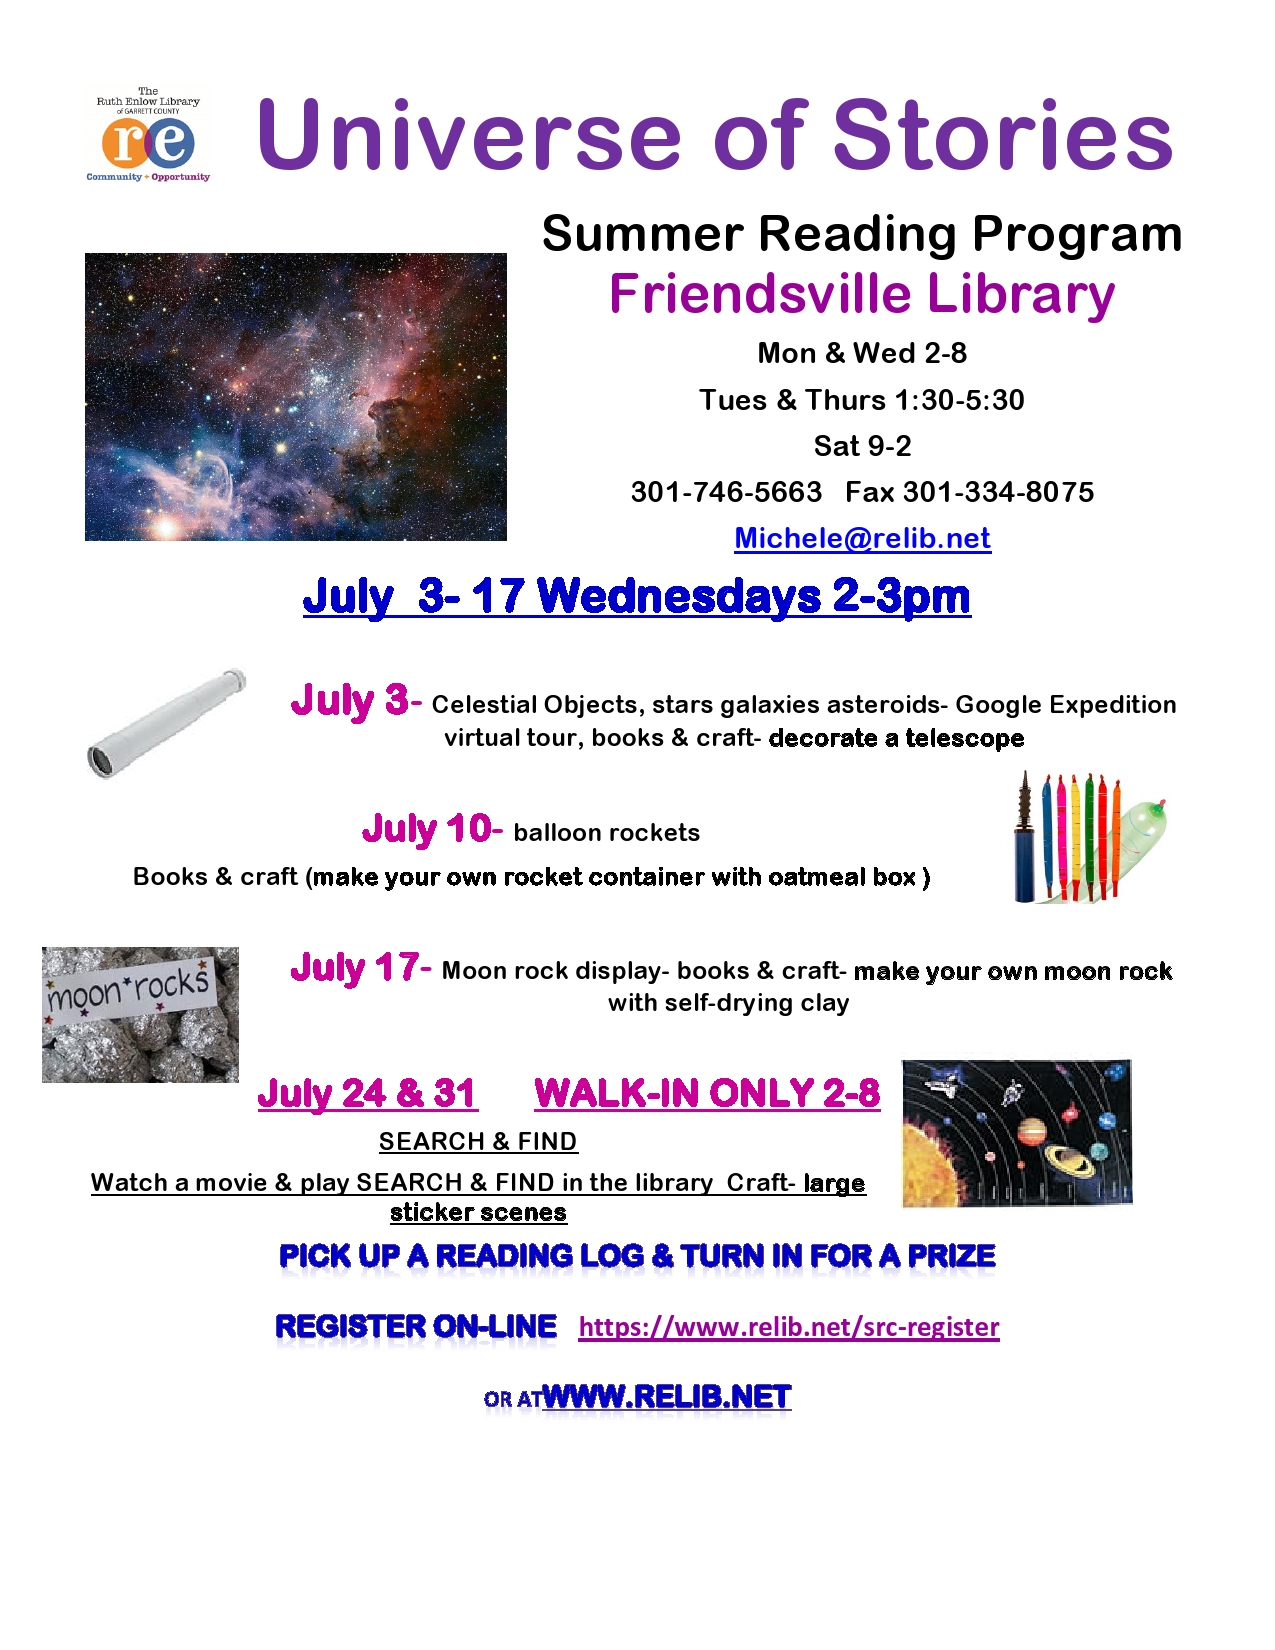 Friendsville Summer Reading Programs